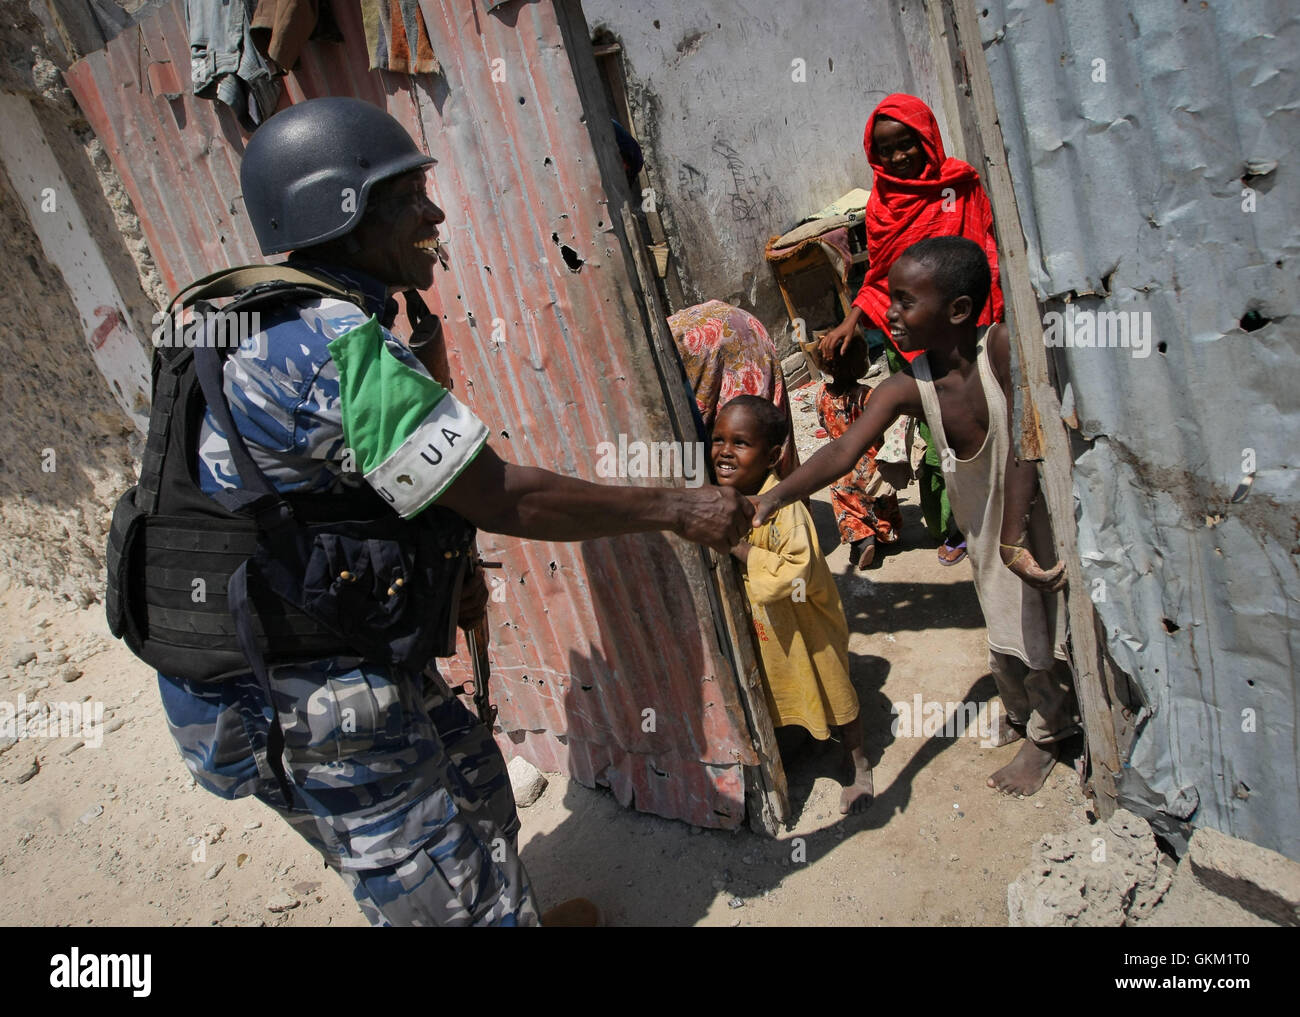 La Somalie, Mogadiscio : Dans un document de cours photos prises et publiées par l'Union africaine et l'équipe de support d'information des Nations Unies 09 novembre, un agent de la police ougandaise agissant comme partie d'une unité de police constituée (FPU) avec la Mission de l'Union de l'Union africaine en Somalie (AMISOM), serre la main avec un jeune garçon somalien pendant une patrouille à pied dans le district de Kaa'ran de la capitale Mogadishu. L'AMISOM FPUs travaillent avec leurs homologues de la Force de police somalienne (SPF) en contribuant à assurer la sécurité à Mogadiscio, en plus d'une formation et d'encadrement du SPF sur le maintien de l'ordre techniques et pratiques. IST UA-ONU PHOT Banque D'Images